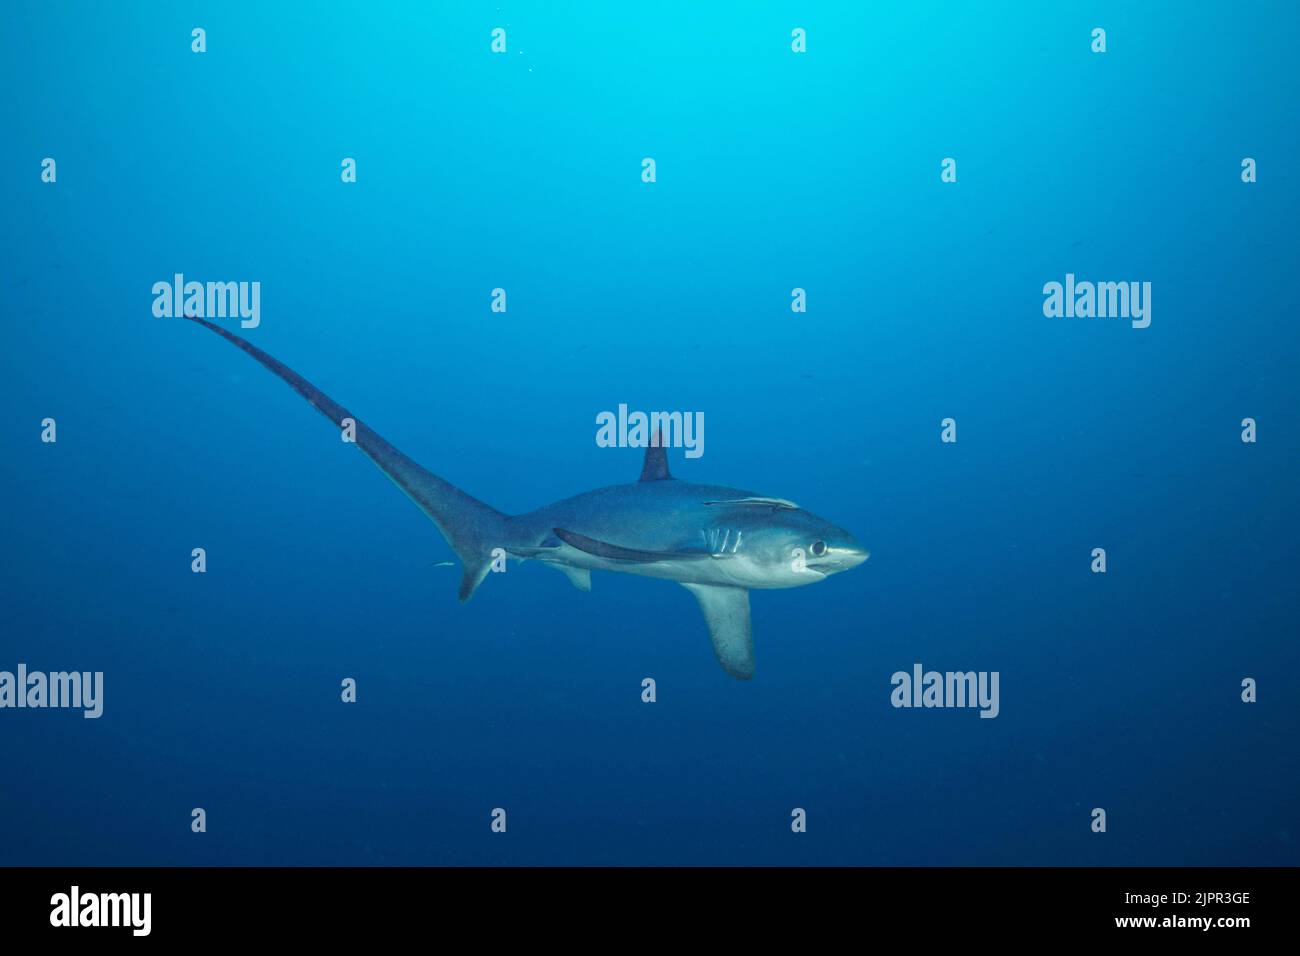 Existen tres especies de tiburones zorro todas caracterizadas por el inconfundible lóbulos superiores alargadas de sus aletas traseras. Esta, la zona pelágica thresh Foto de stock